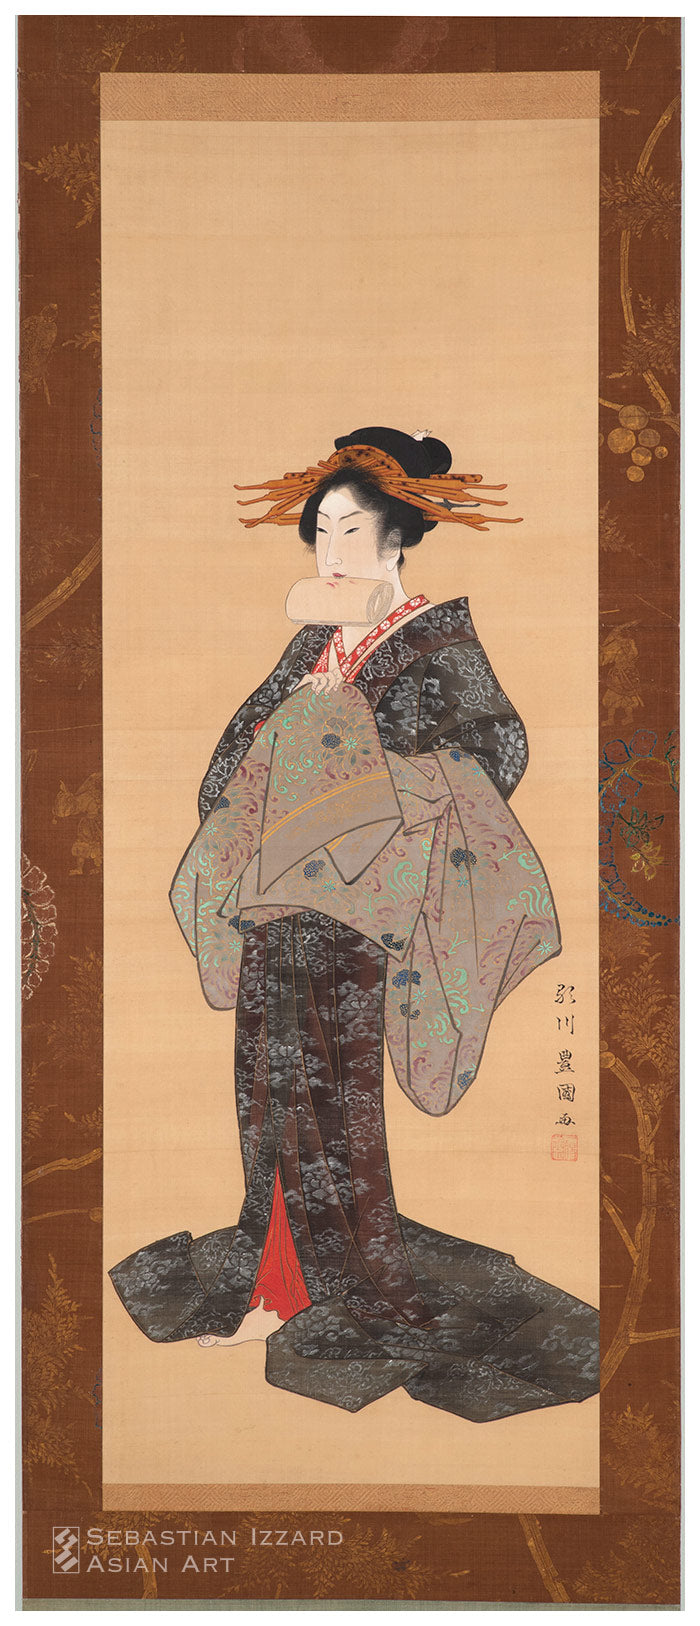 UTAGAWA TOYOKUNI (1769–1825) - Sebastian Izzard Asian Art